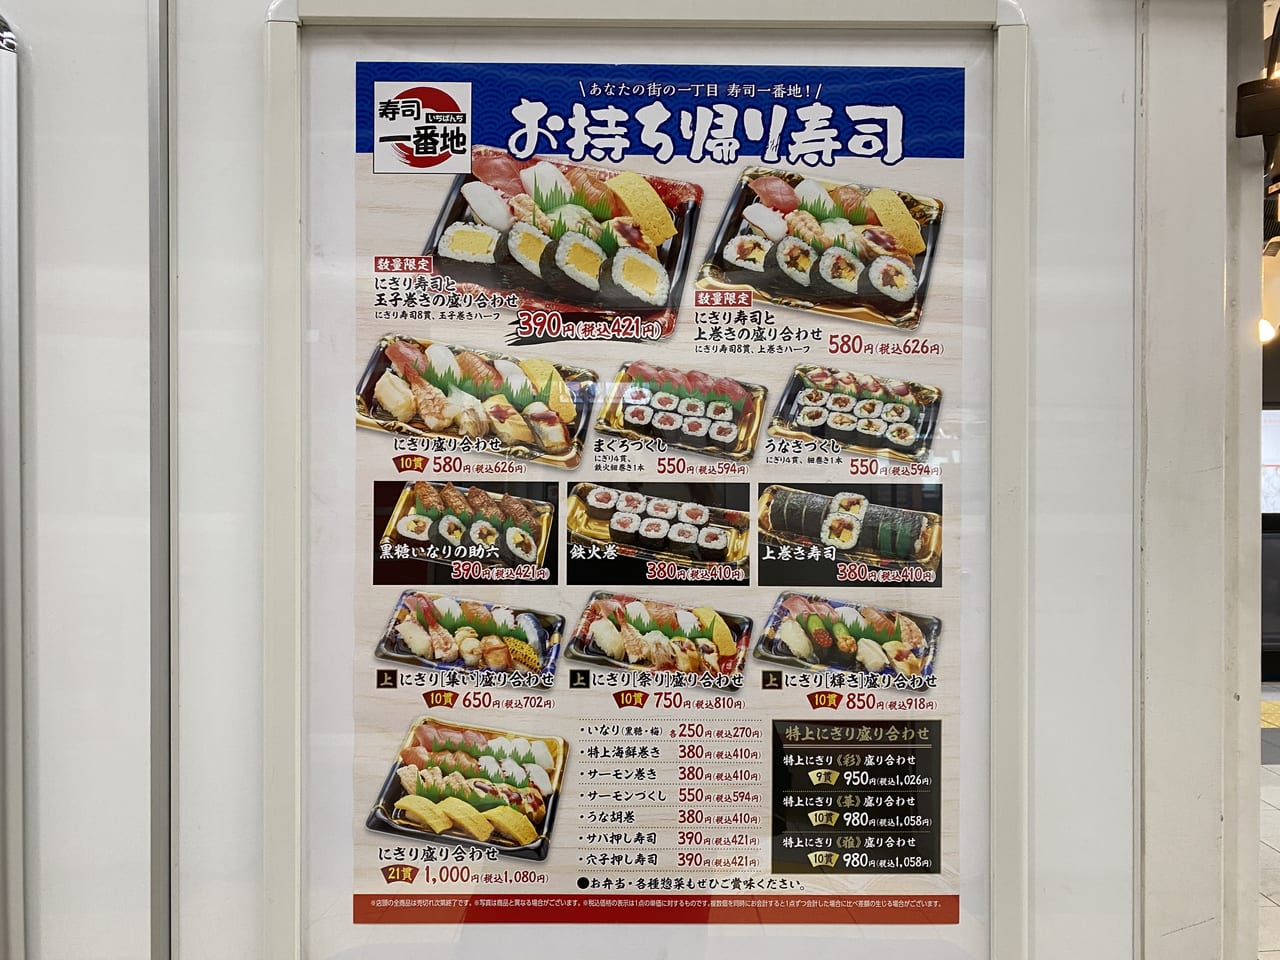 豊中市 北大阪急行 千里中央駅 ホームに お持ち帰り寿司の 寿司一番地 が出店しています 号外net 豊中市